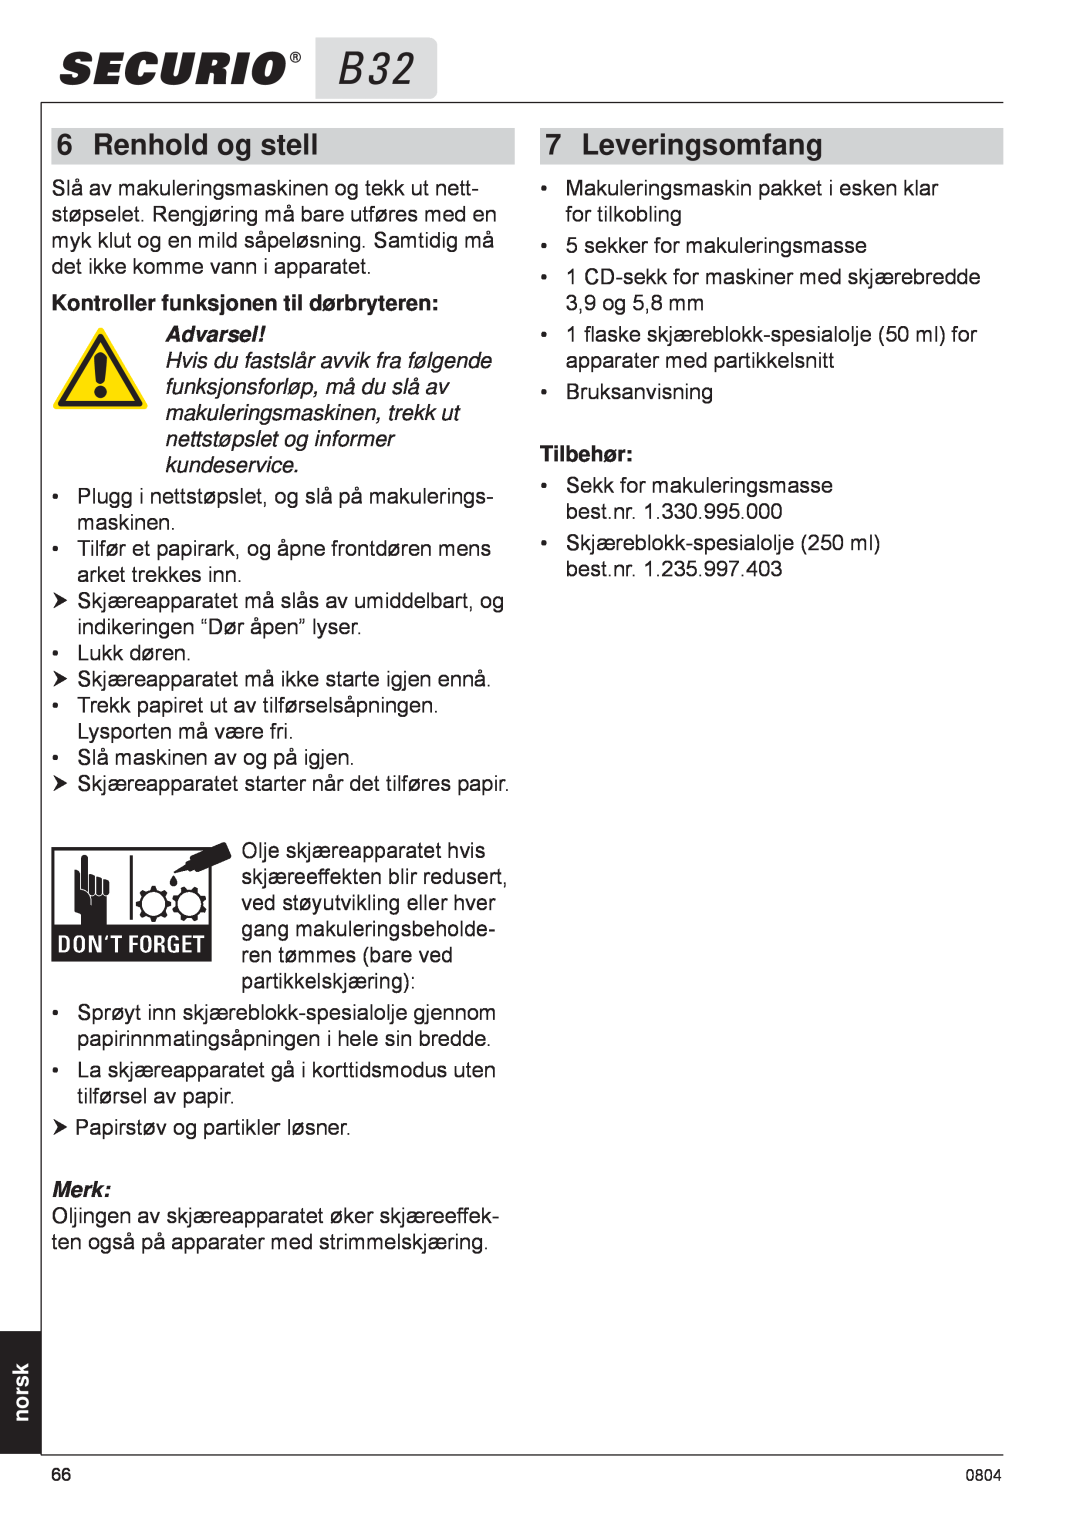 HSM B32 manual Renhold og stell, Leveringsomfang, Kontroller funksjonen til dørbryteren, norsk, Advarsel, Merk, Tilbehør 